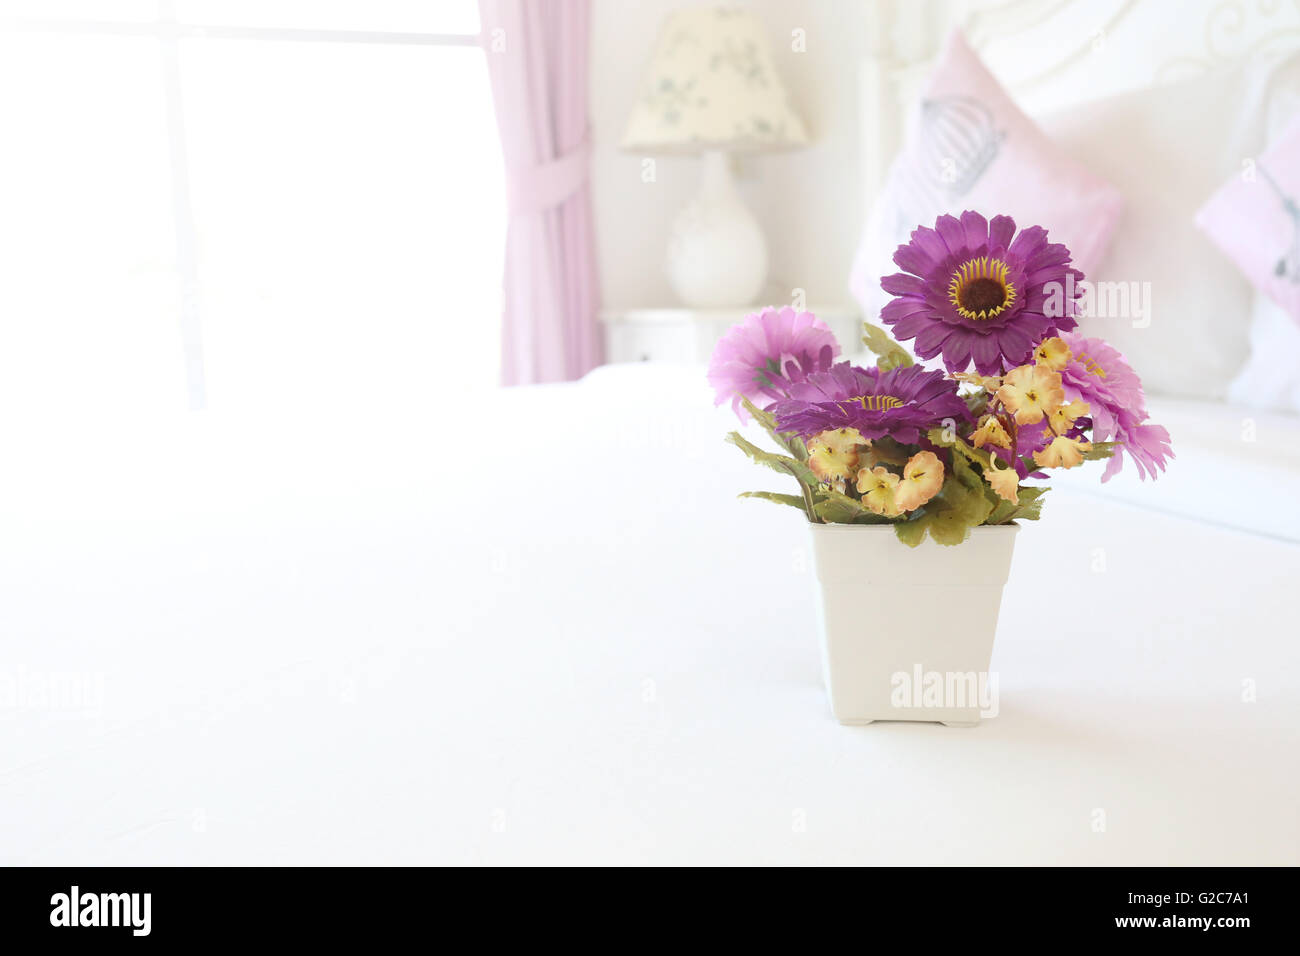 Vintage Rosa künstliche Blumen auf einem Tisch in der weiße Schlafzimmer Innenraum-Konzept für die Hintergrund-Design. Stockfoto